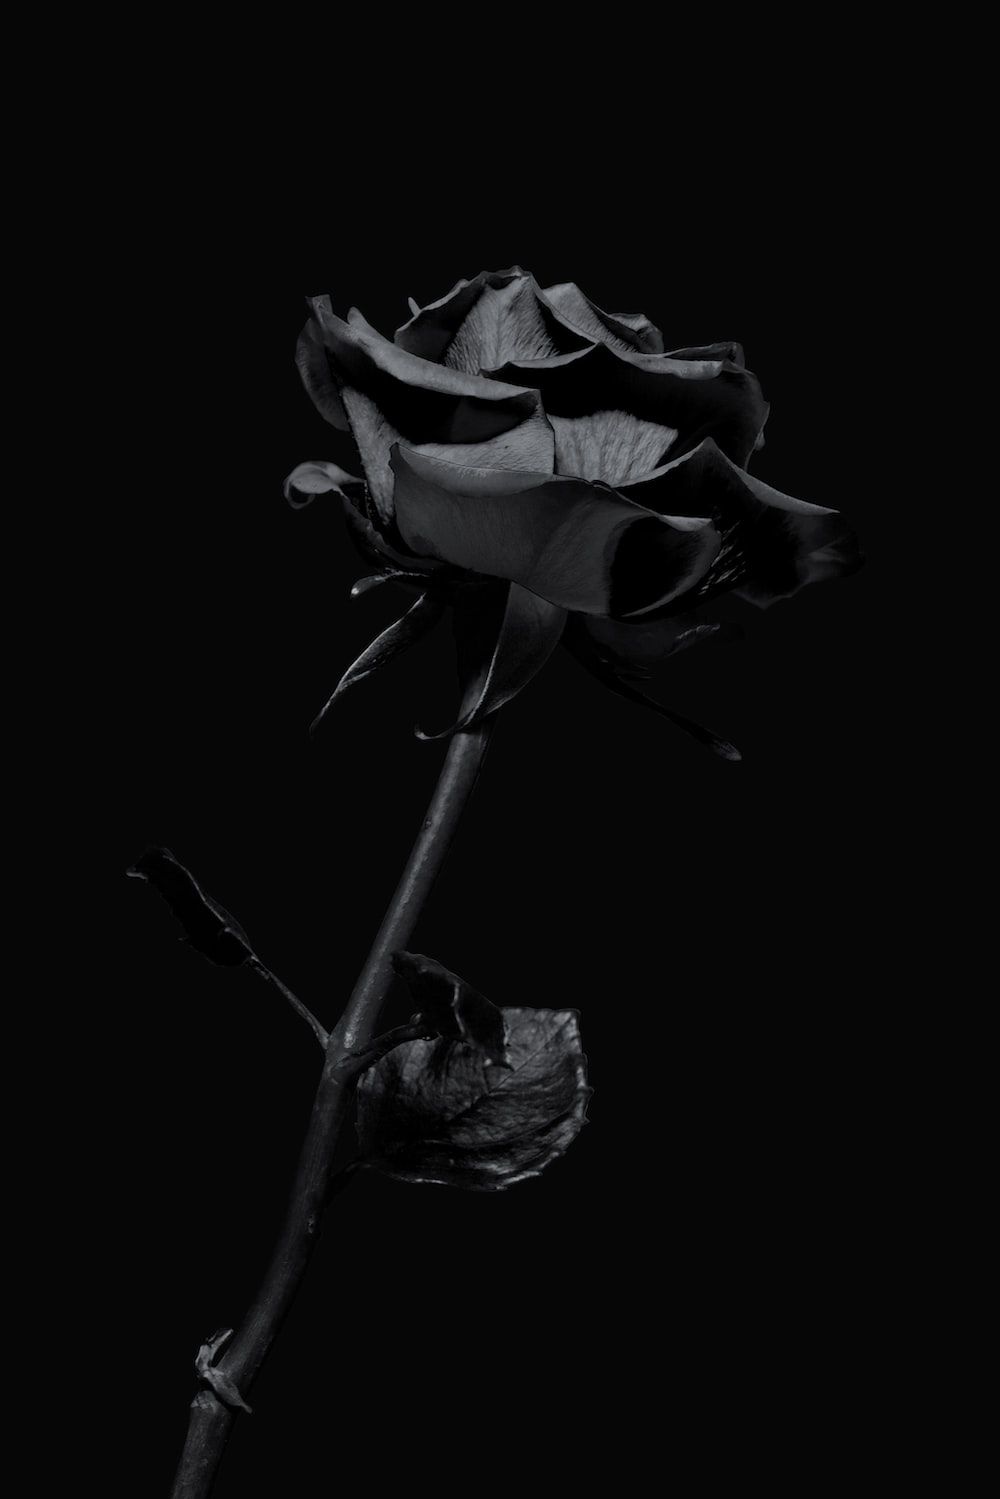 A black rose on a black background - Black, black rose